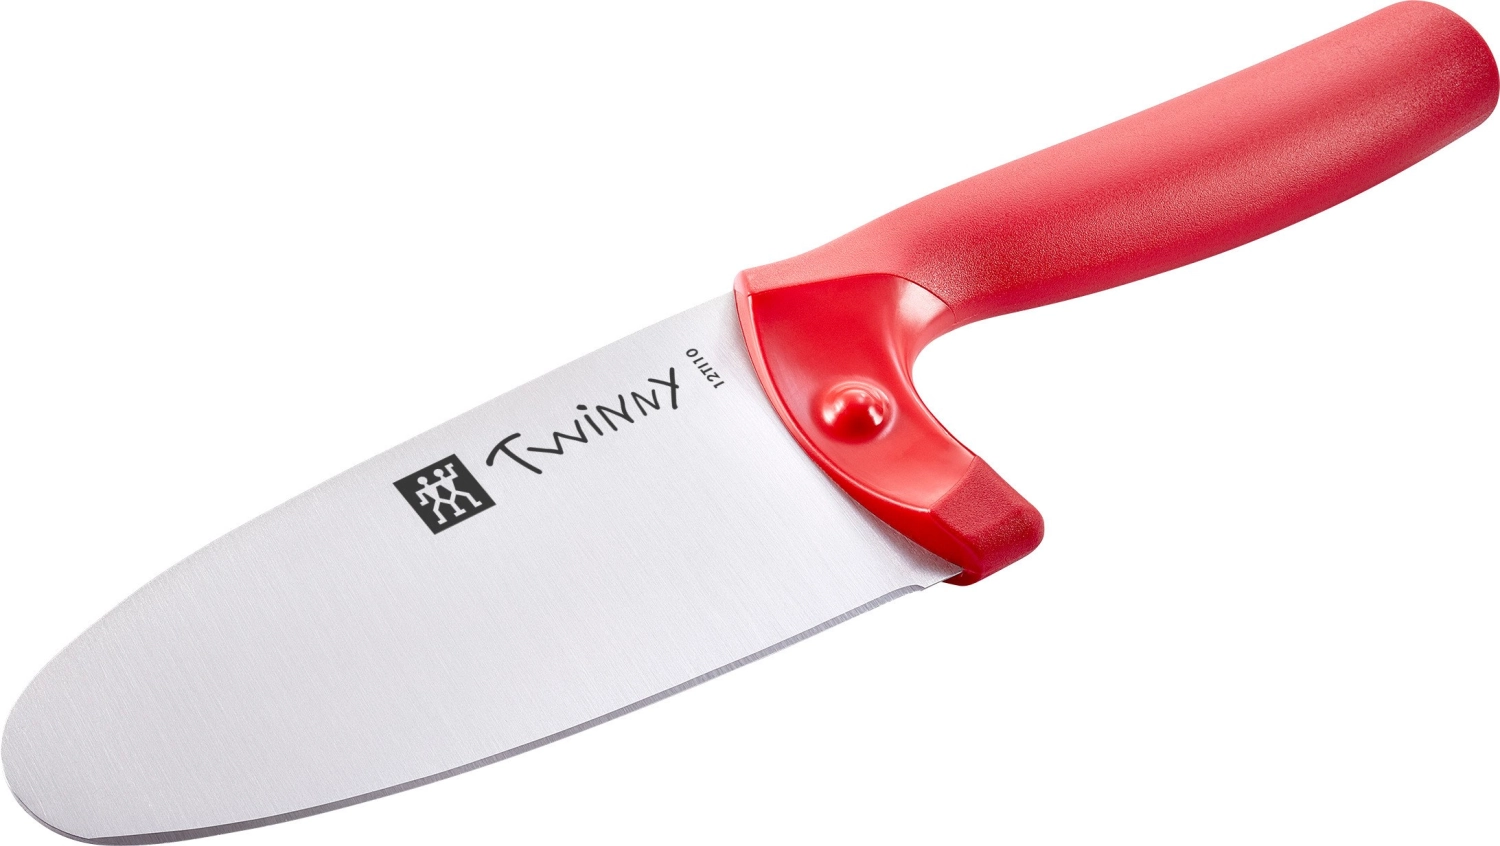 Zwilling twinny couteau de cuisine pour enfants 10cm, rouge